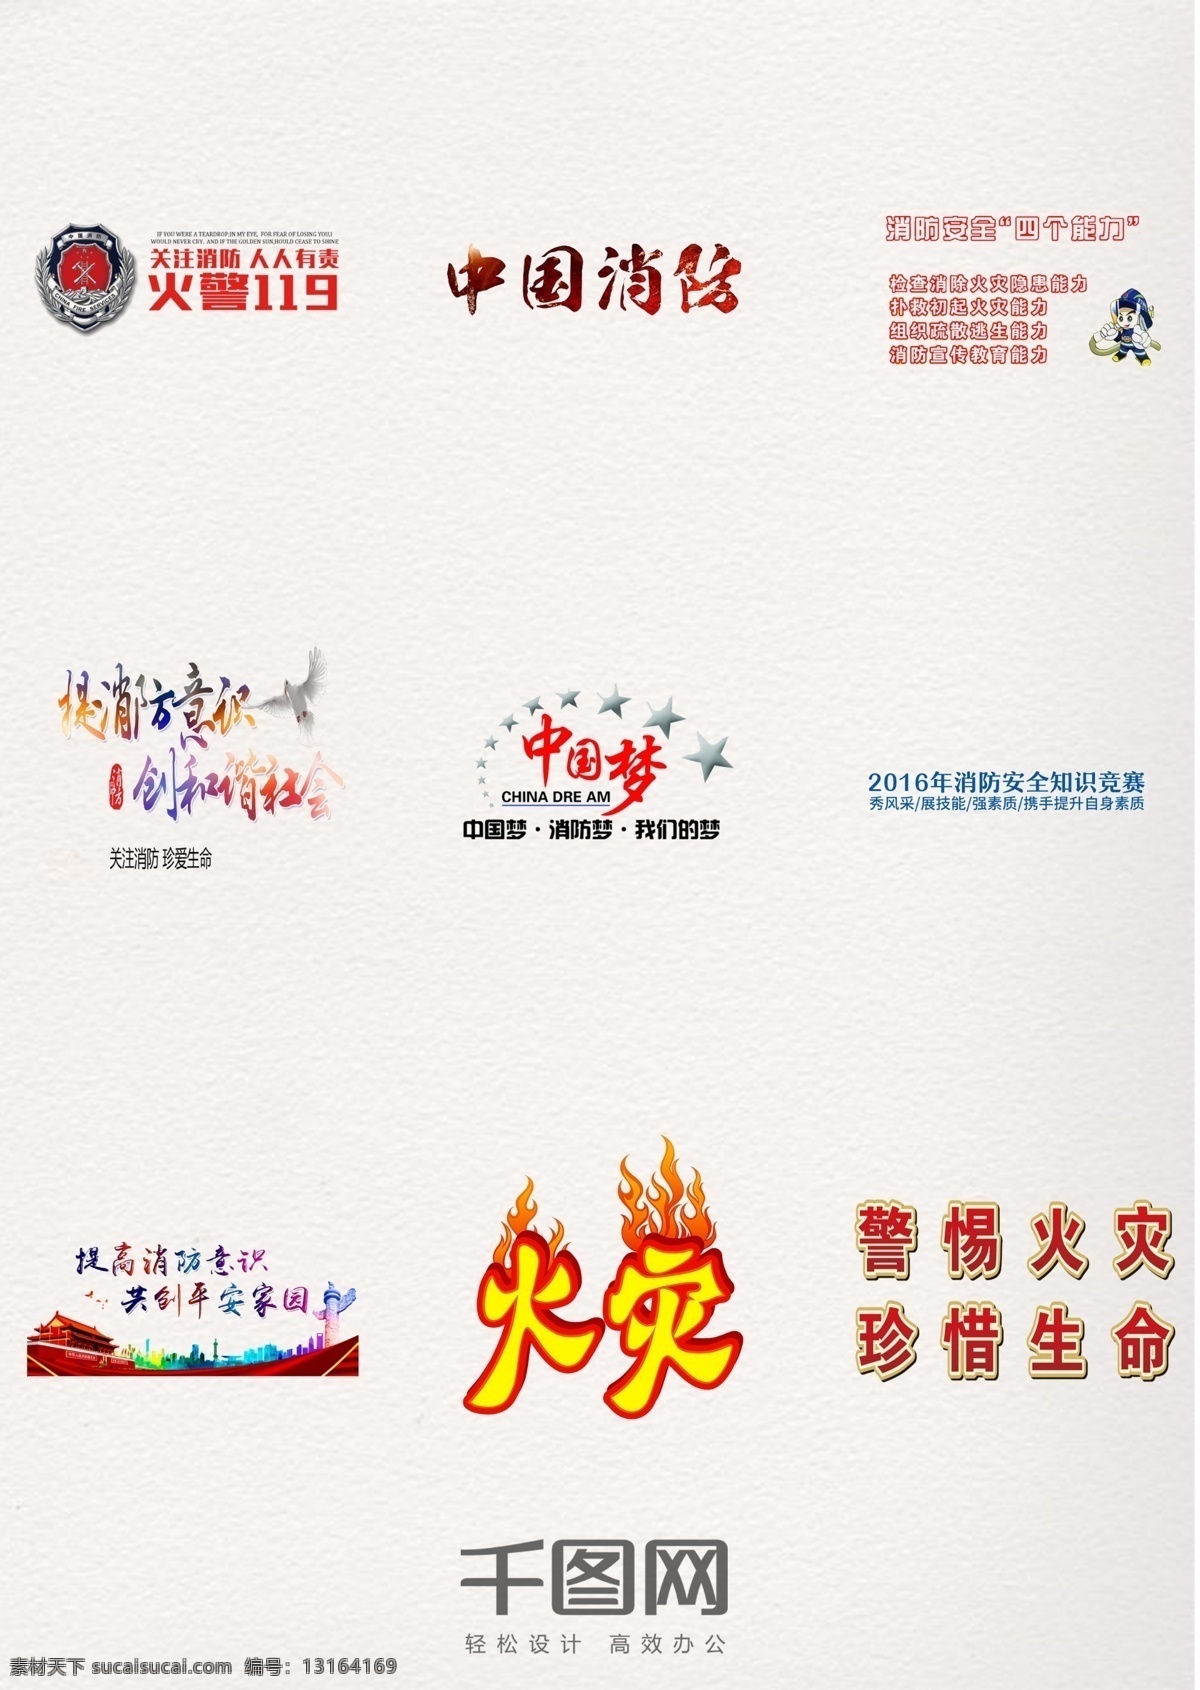 消防日 防火 字体 元素 消防 中国 防火字体 艺术字体 防火提醒 防患于未然 火灾